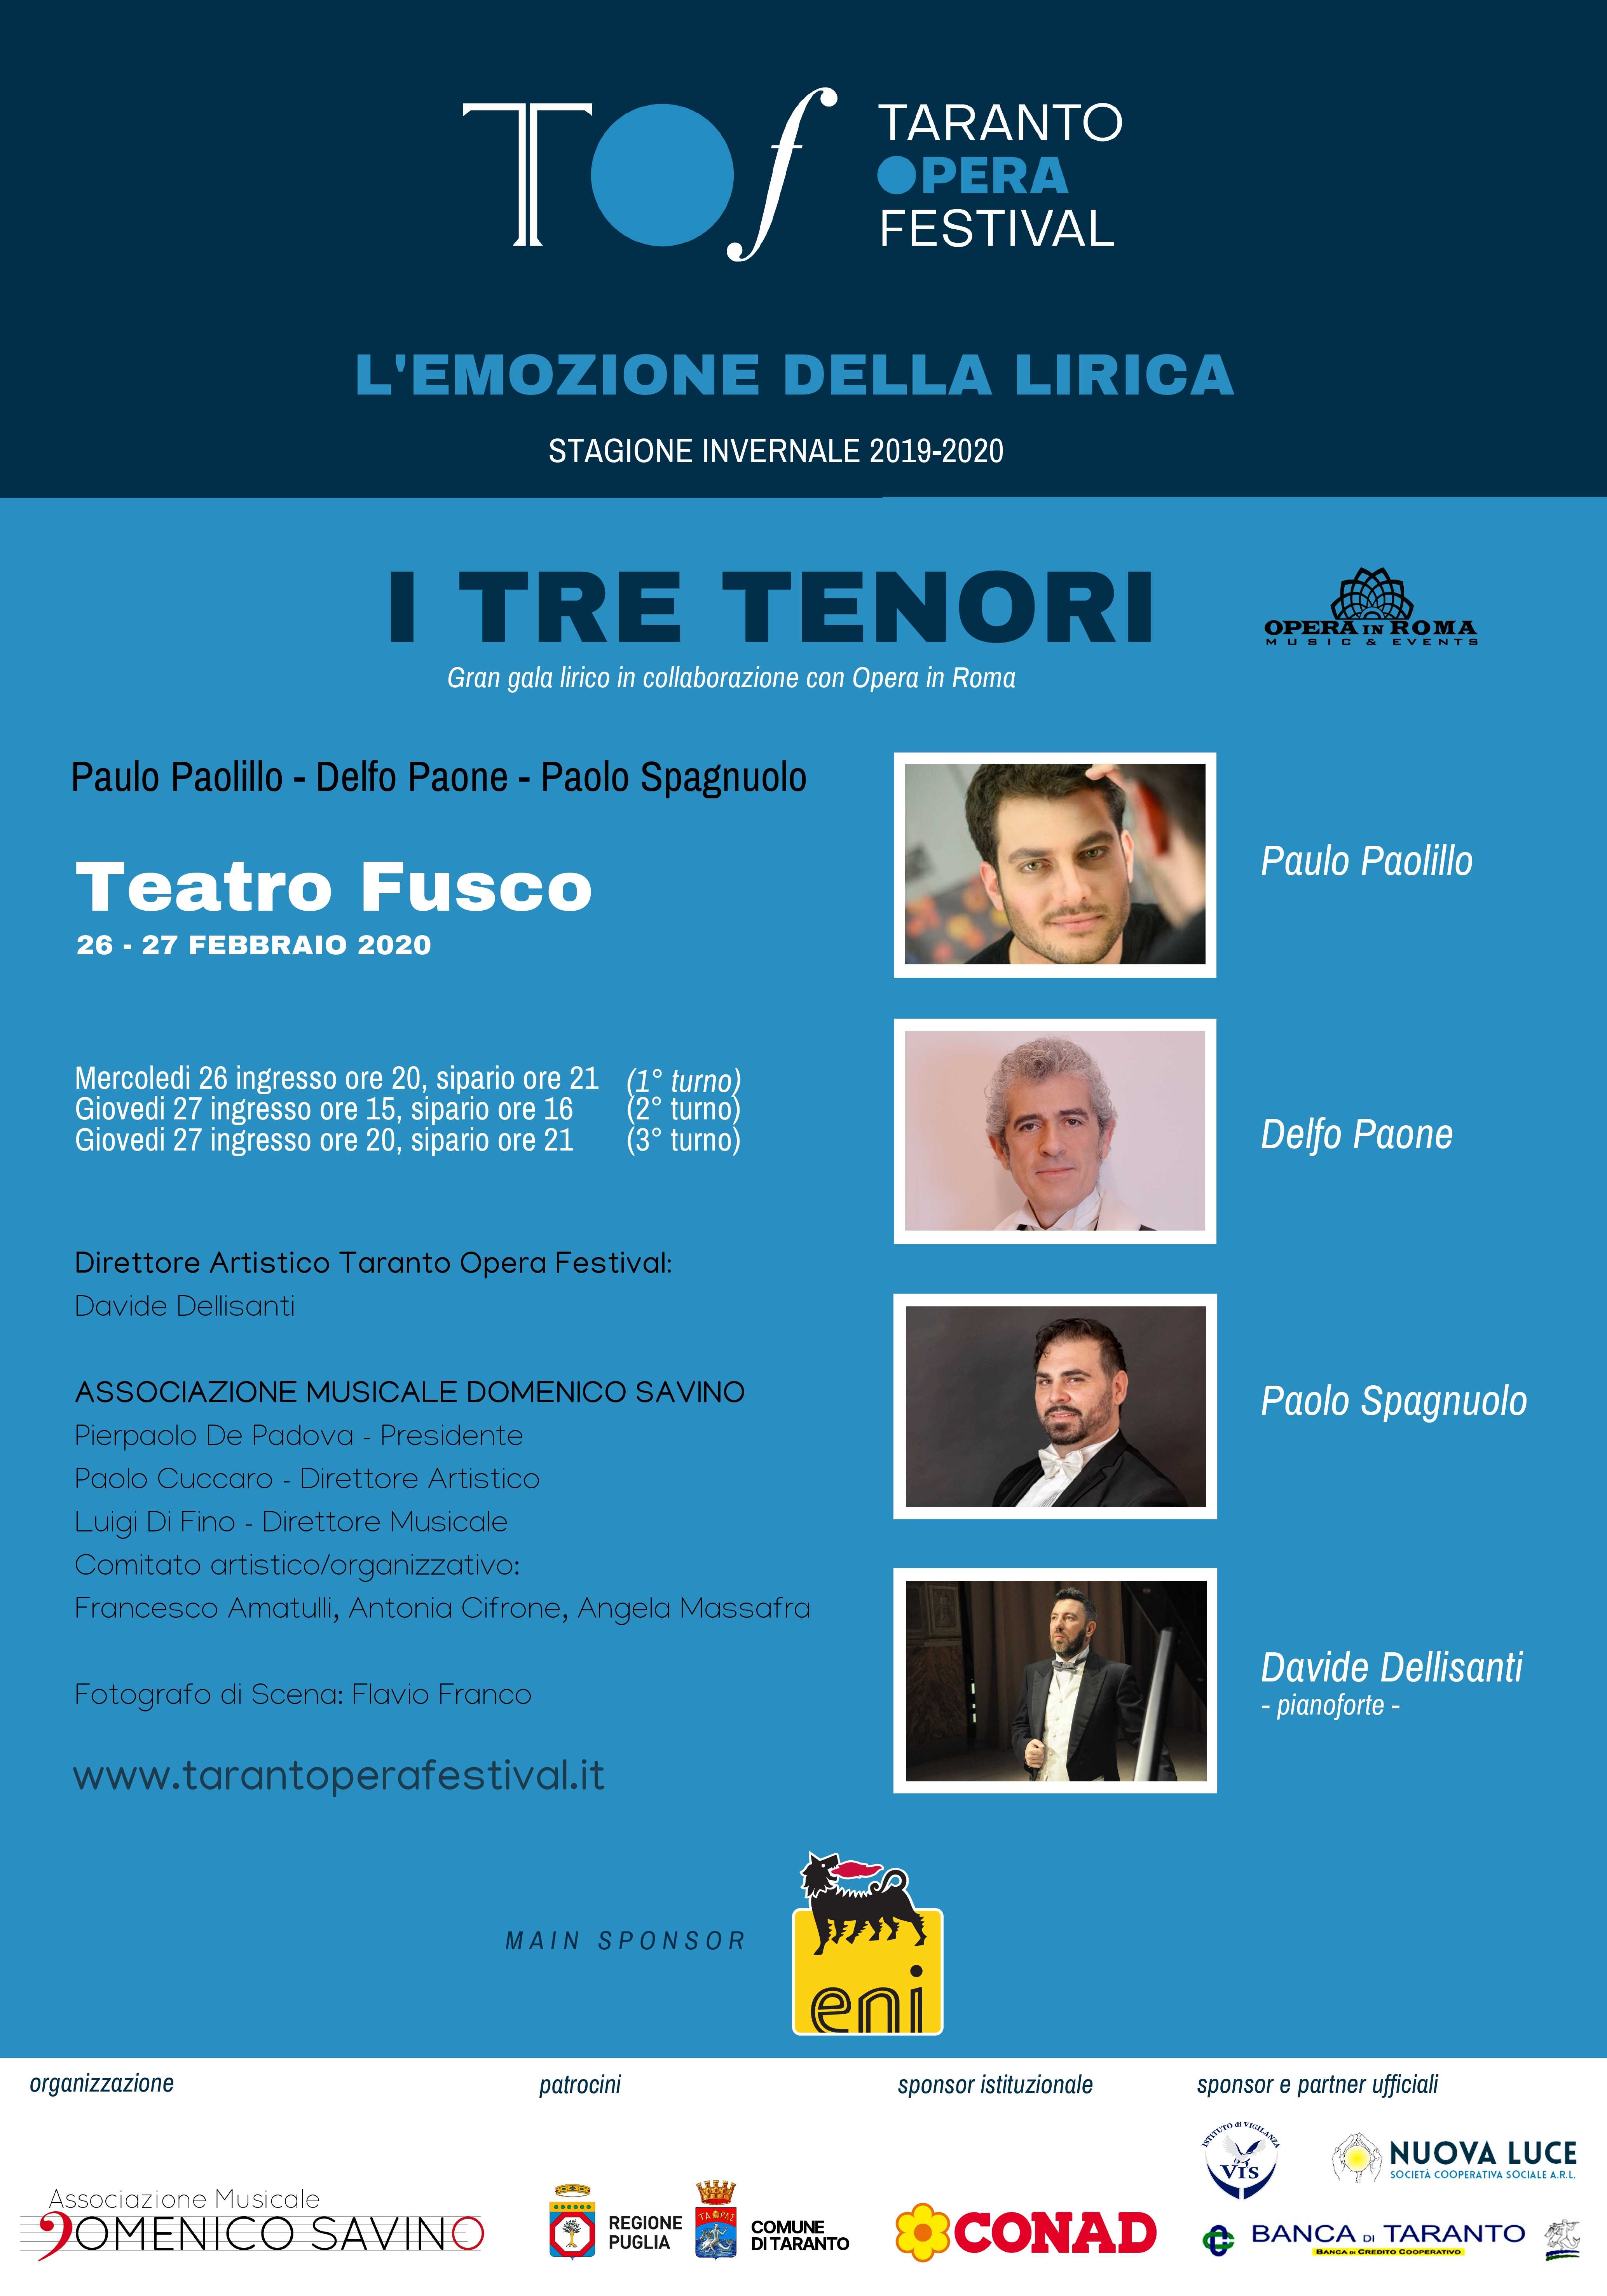 Il Taranto Opera Festival torna sulle scene con il terzo spettacolo della stagione invernale, il 26 e 27 febbraio, con il gran gala lirico “I tre tenori”